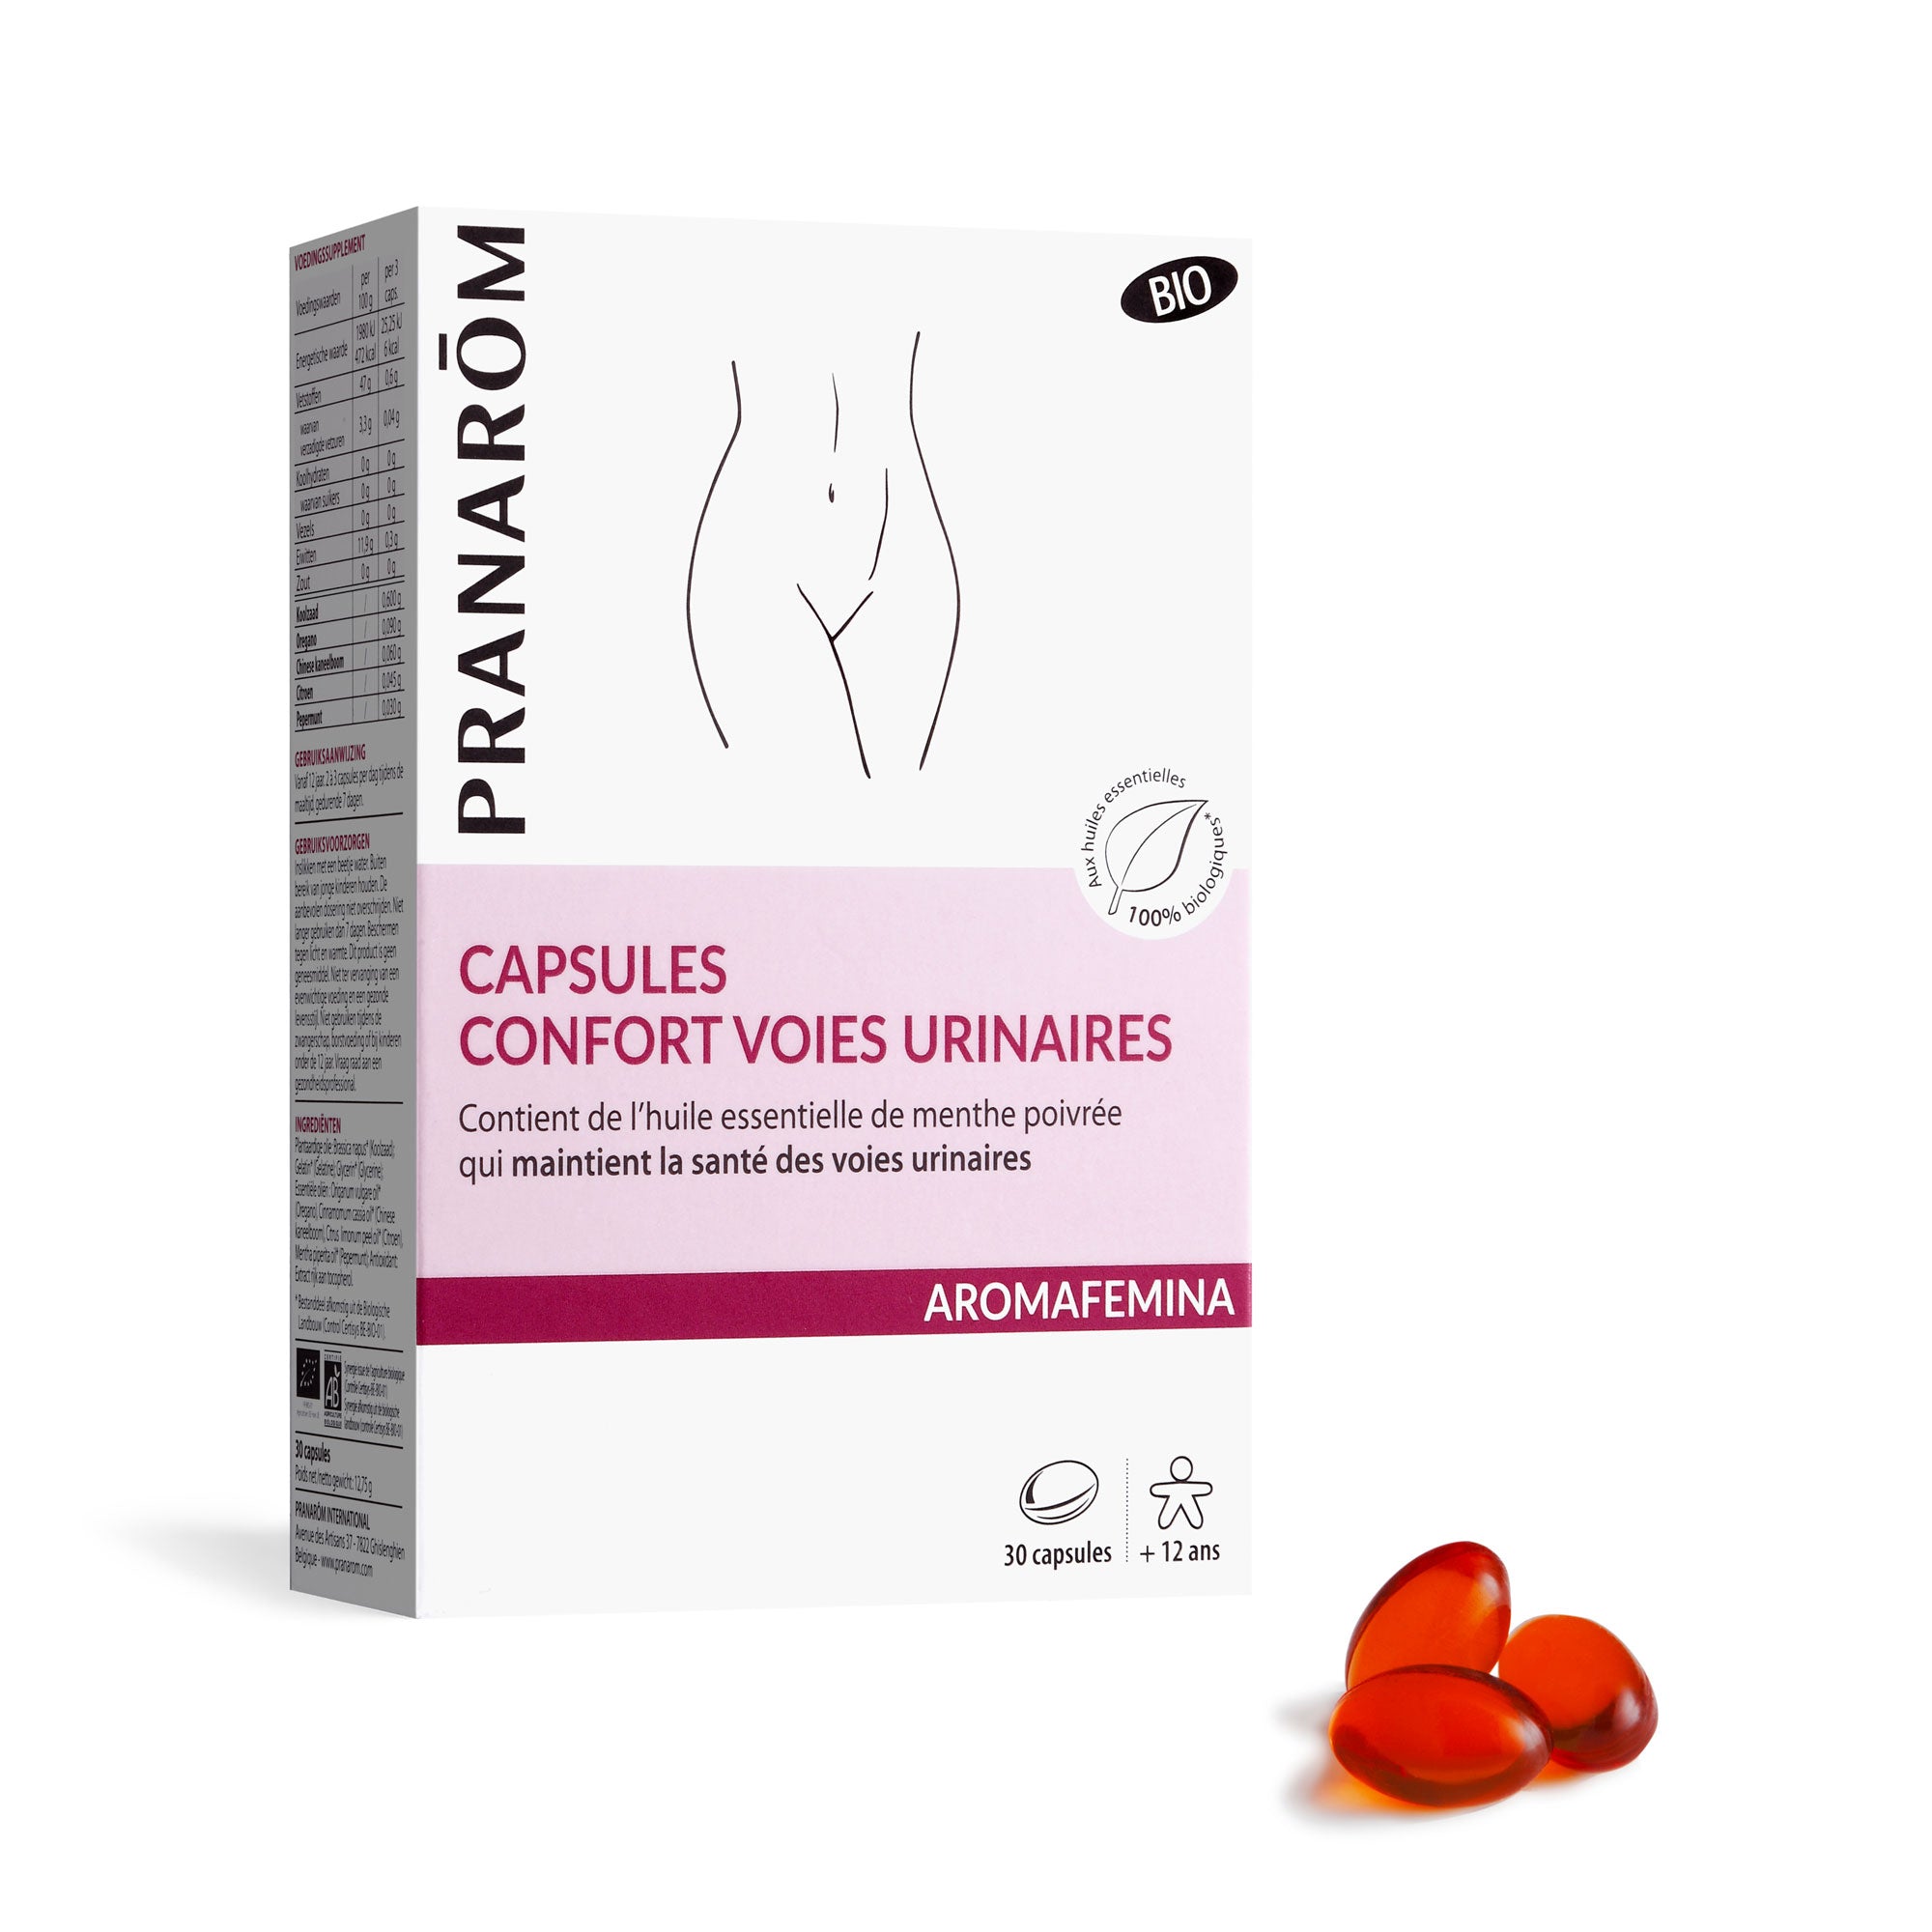 Capsules - Confort voies urinaires - Bio